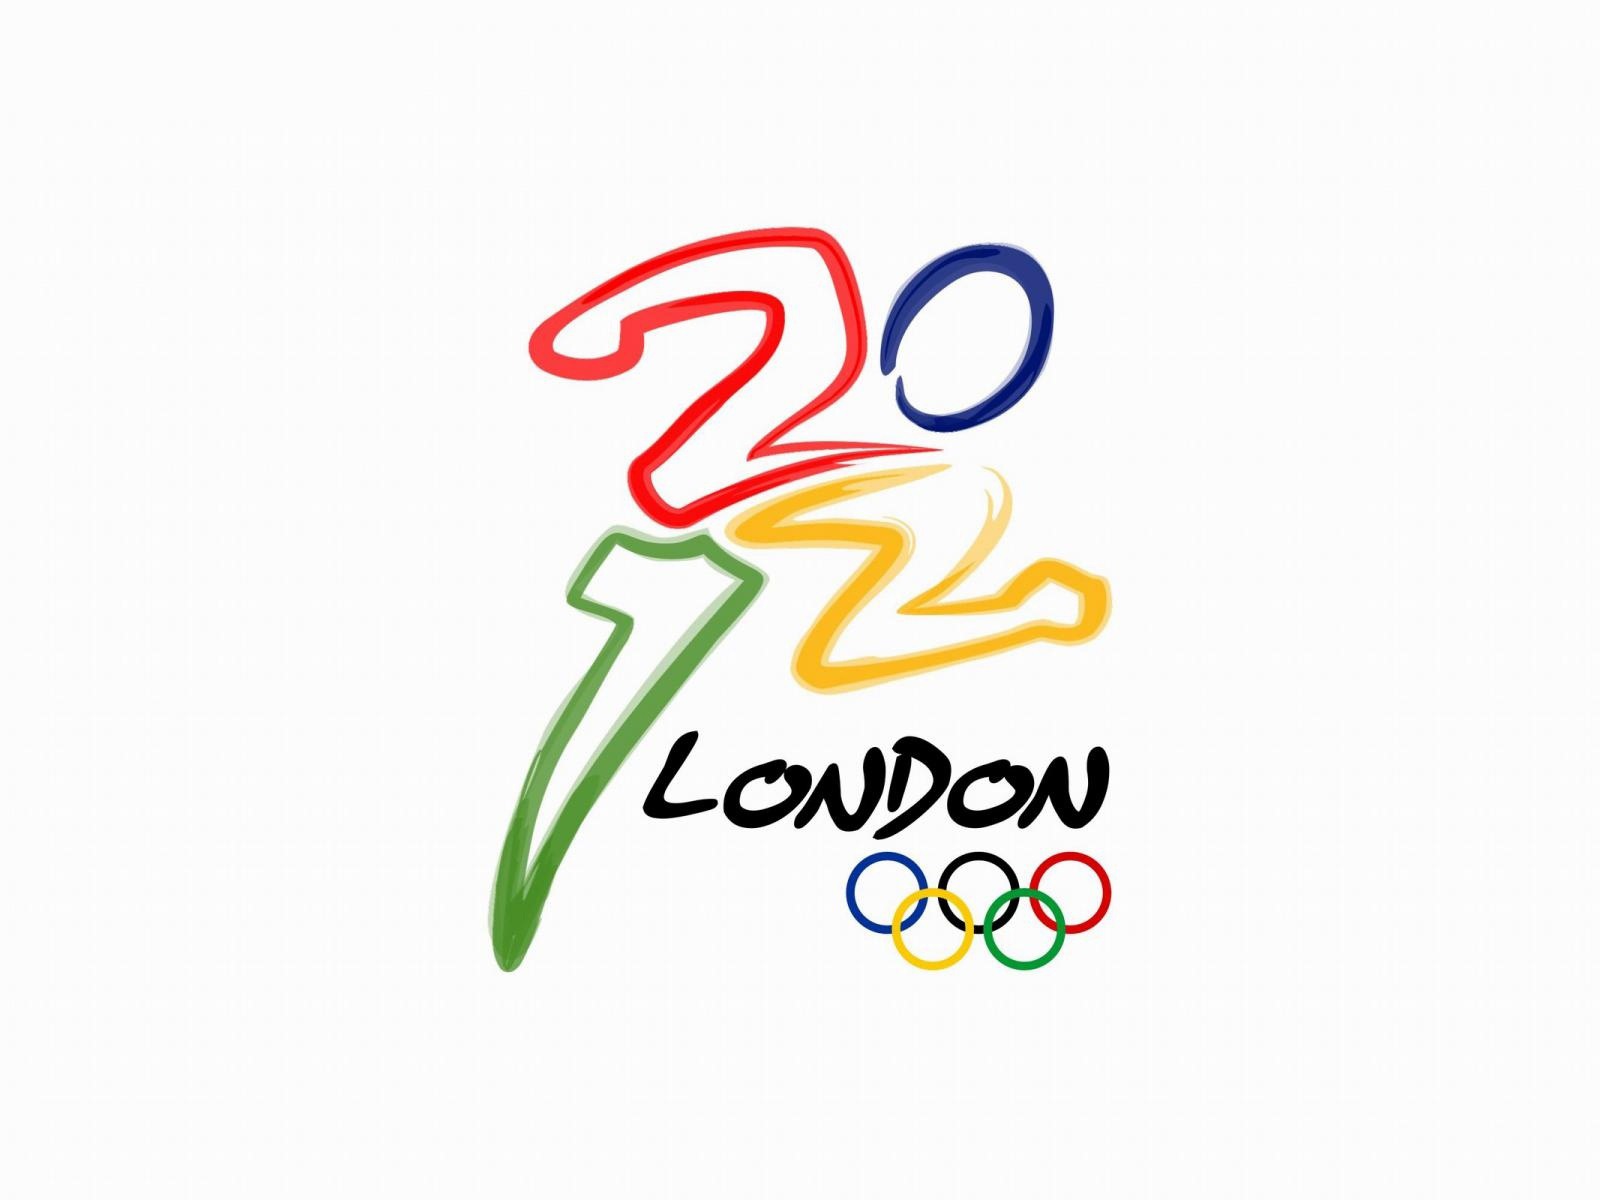 2012伦敦奥运会 主题壁纸(二)22 - 1600x1200